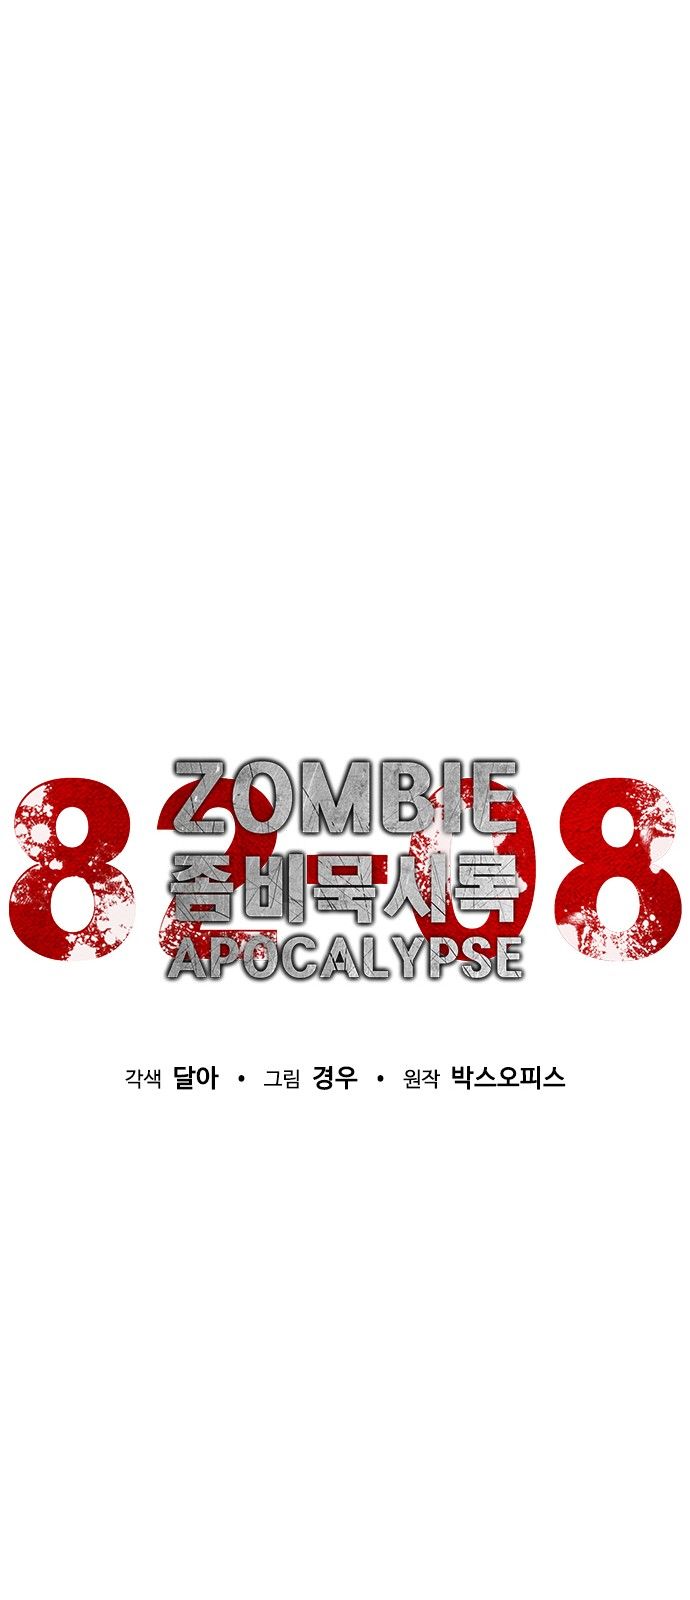 Zombie Apocalypse 82 08 19 034